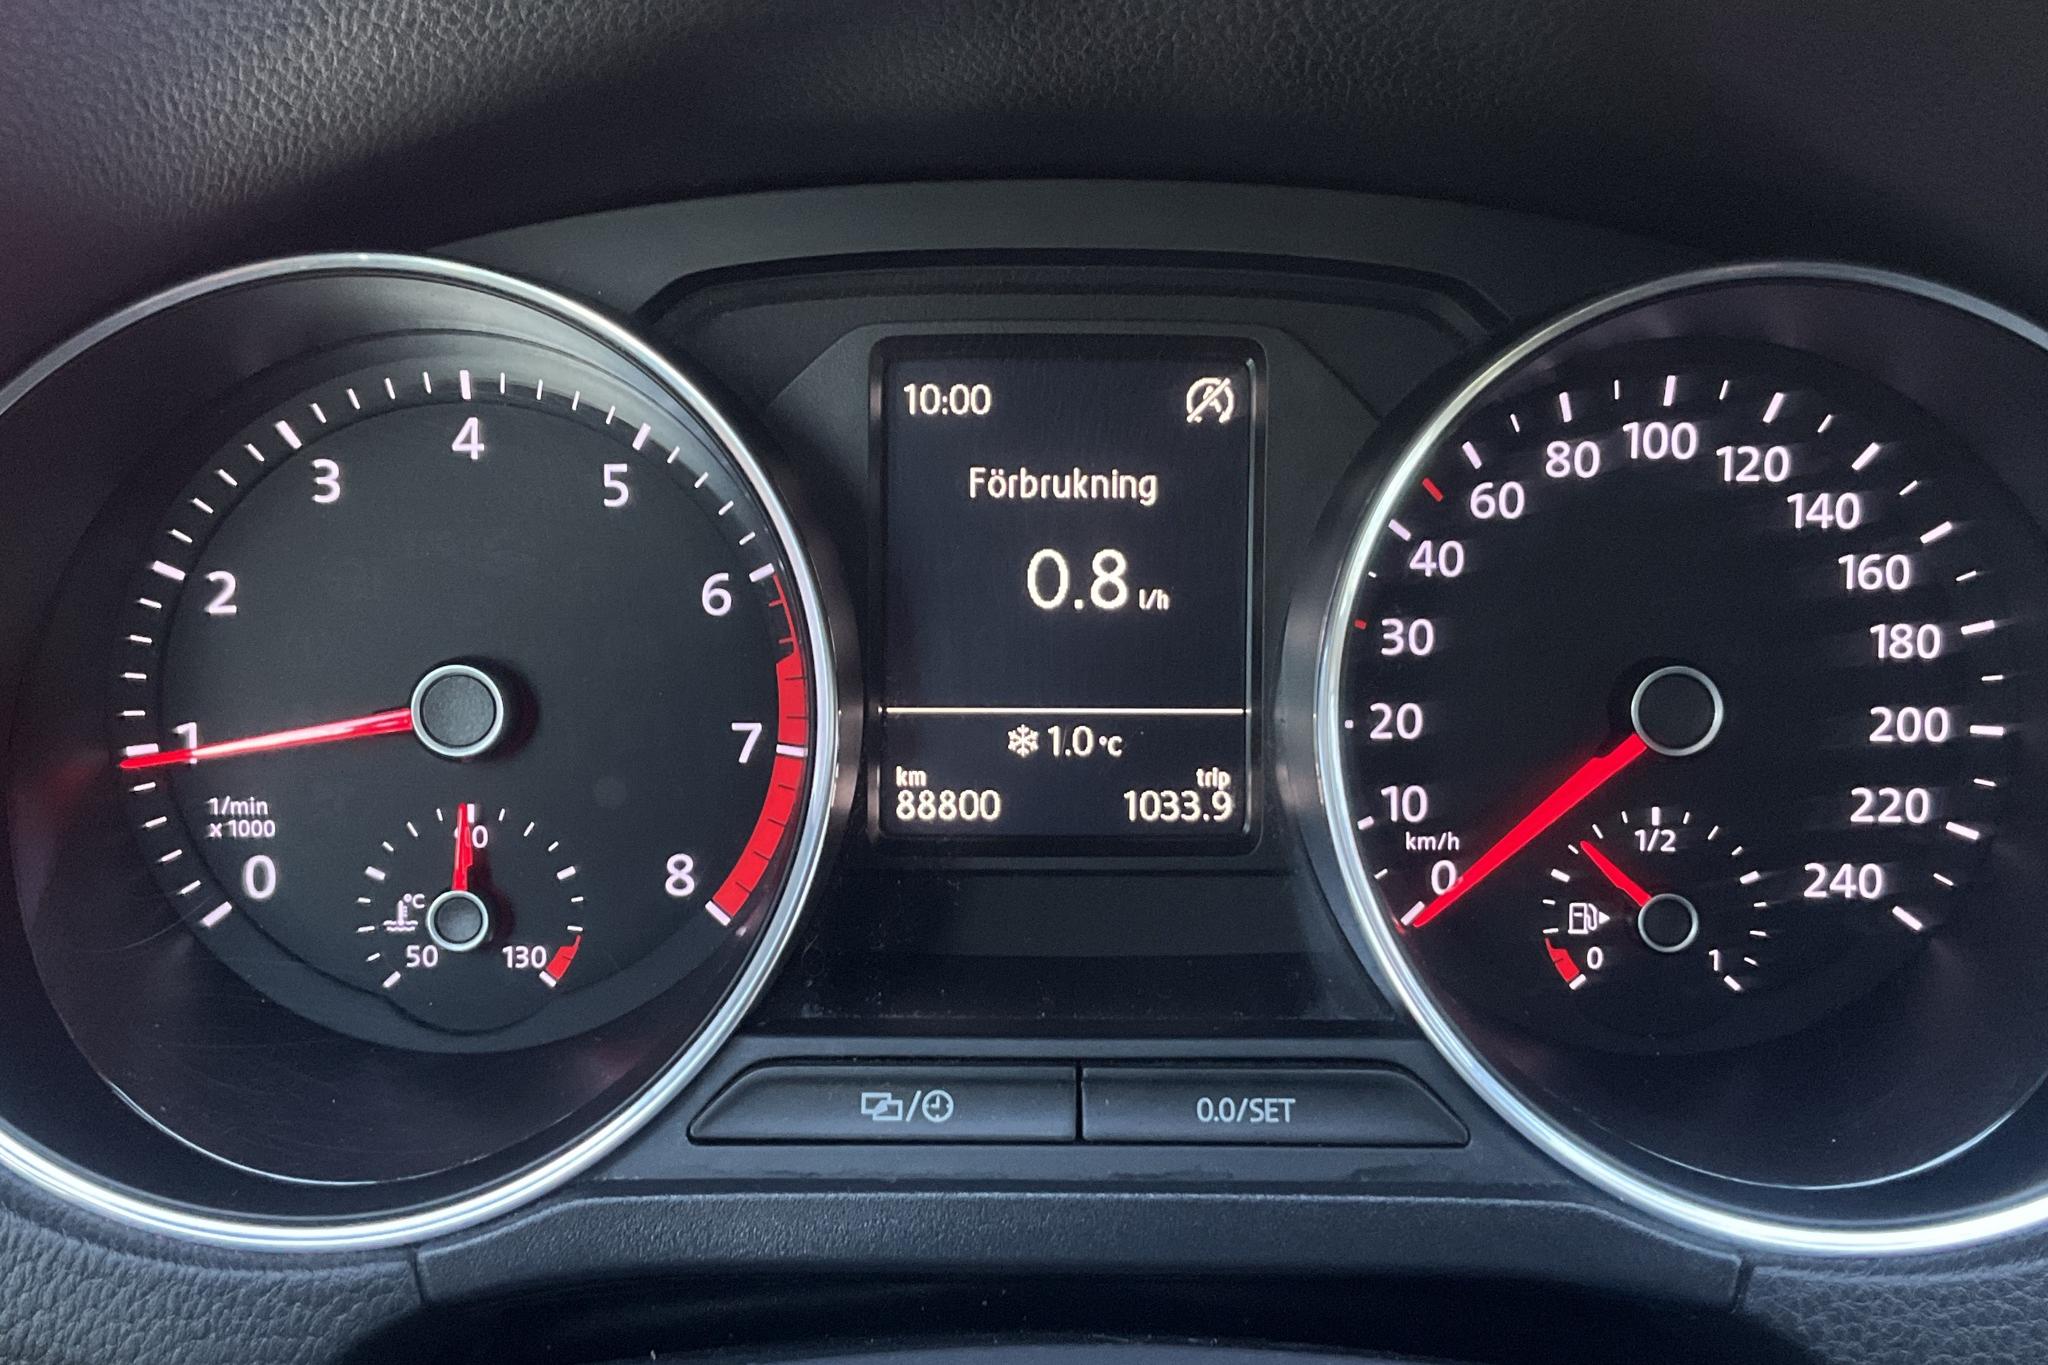 VW Polo 1.2 TSI 5dr (90hk) - 88 800 km - Manual - red - 2017